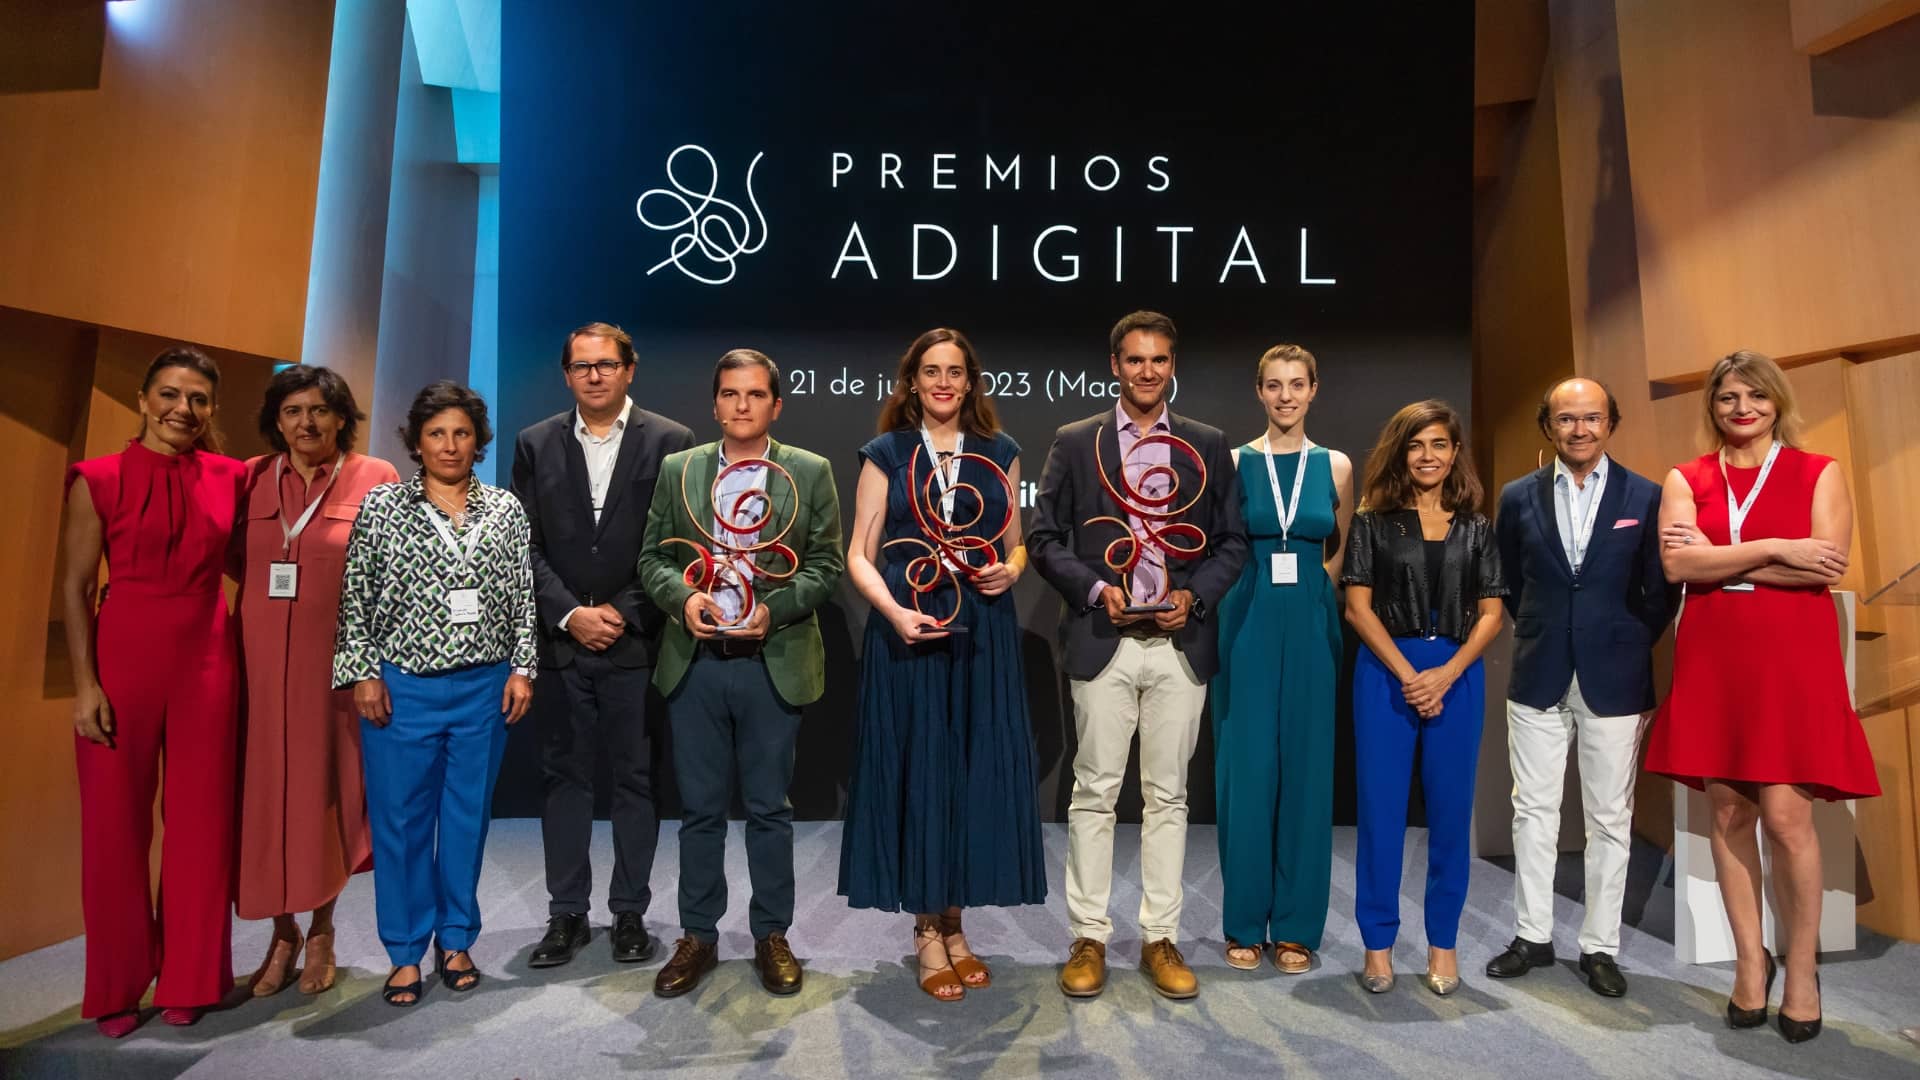 Adigital entrega sus premios 2023 a las iniciativas en digitalización destinadas a mejorar la sociedad